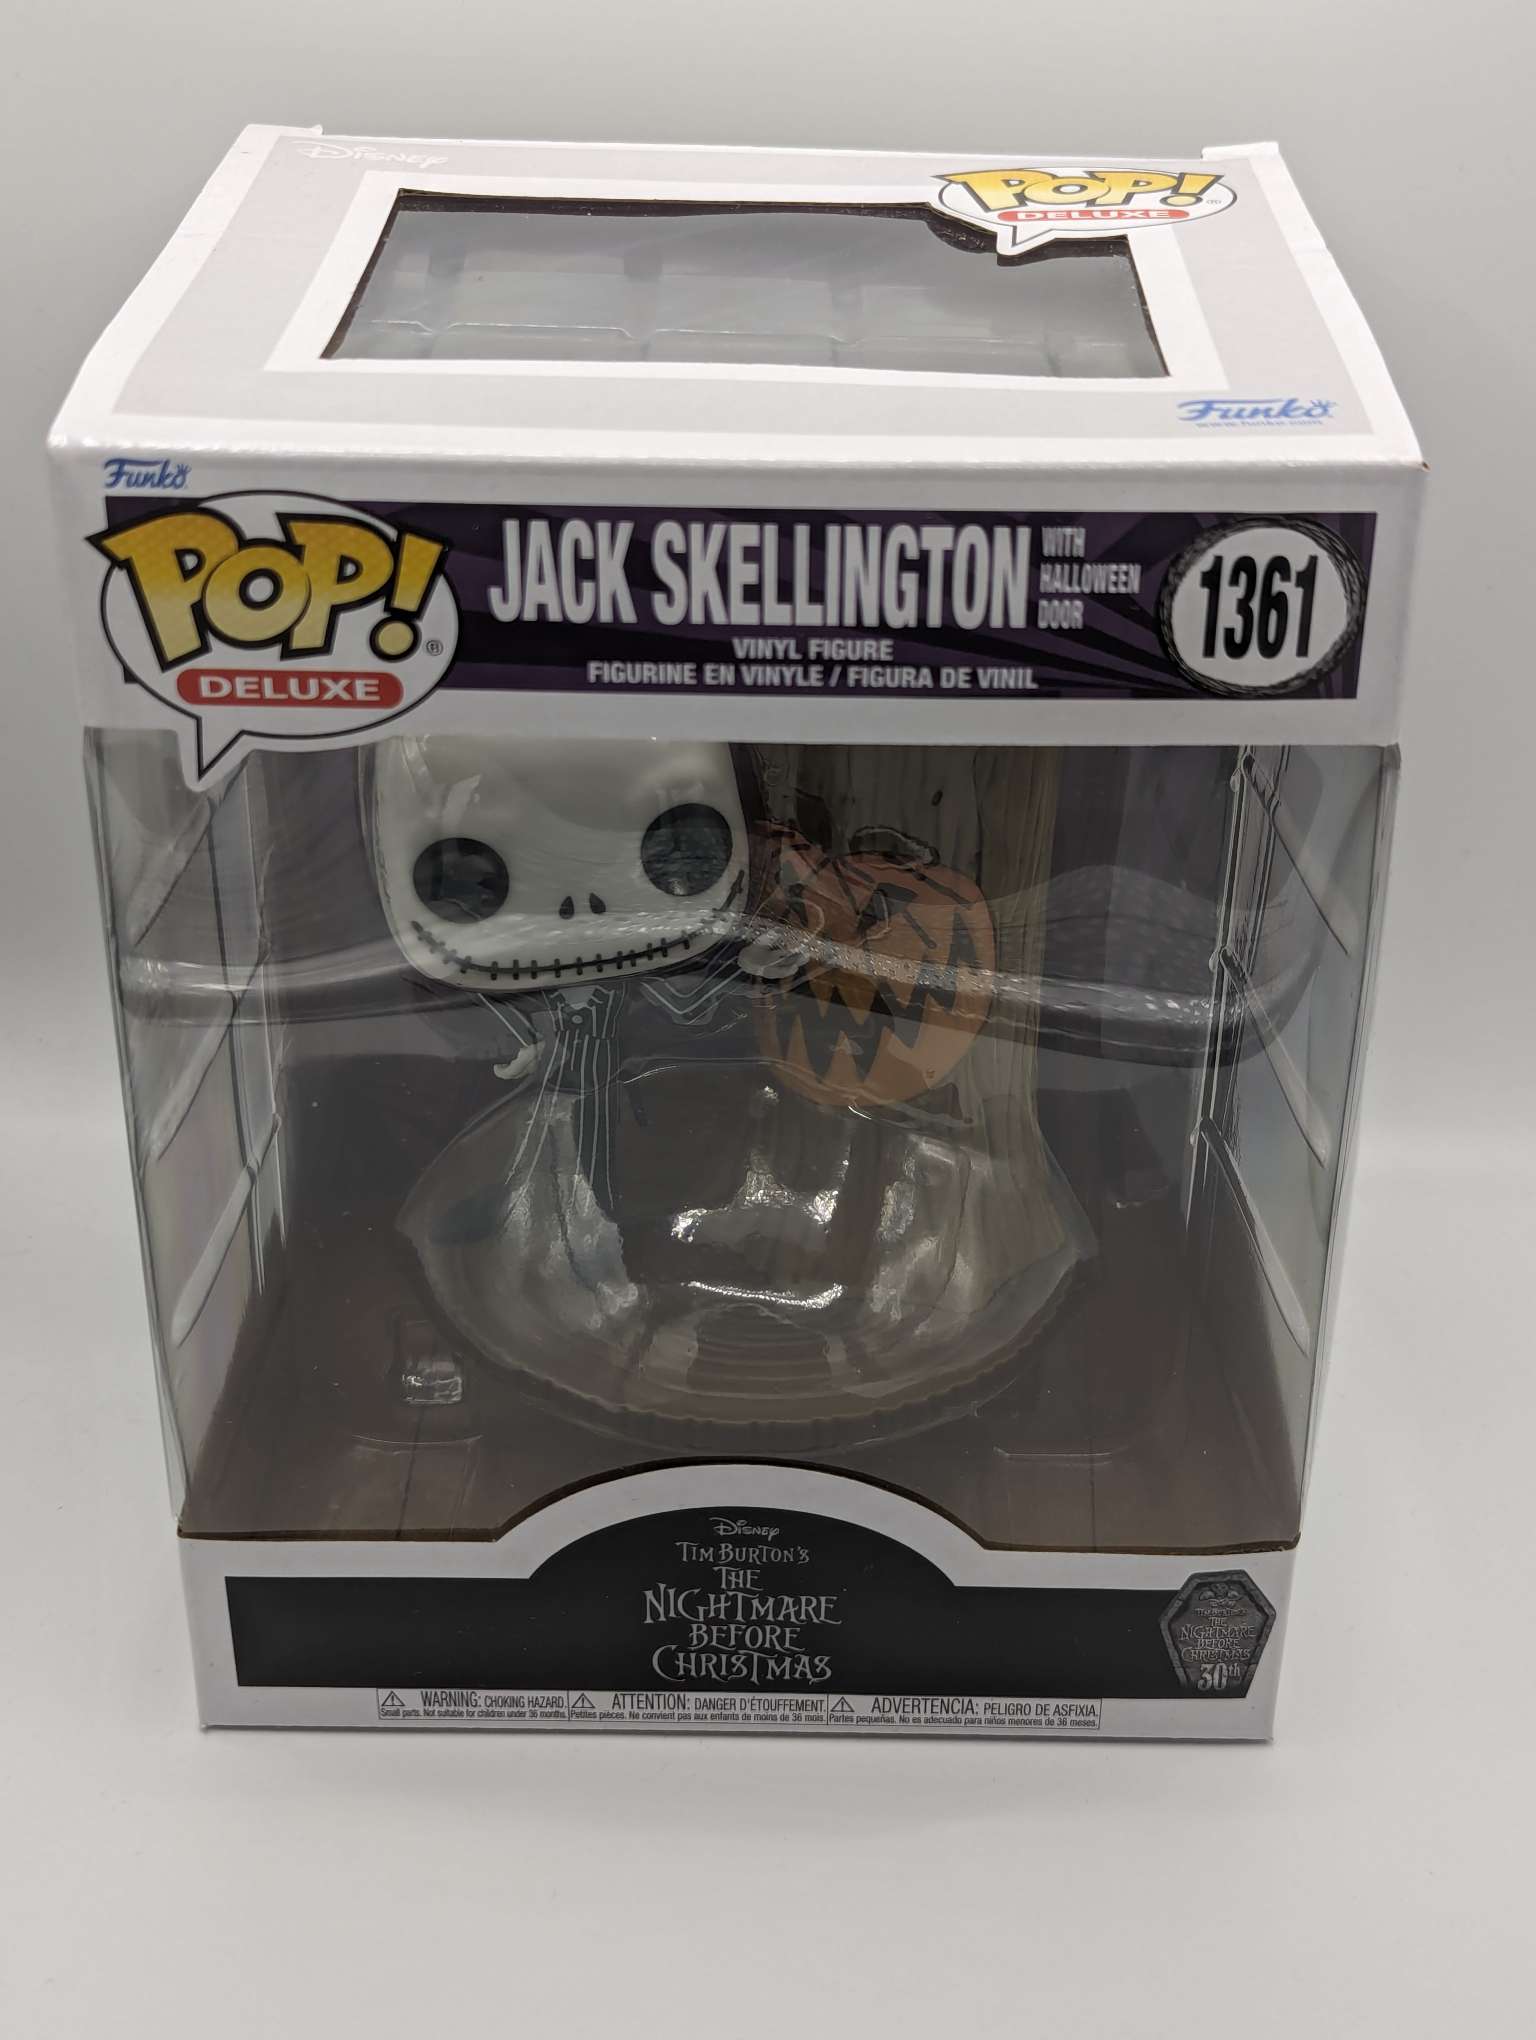 Buy Pop! Deluxe Jack Skellington with Halloween Door at Funko.